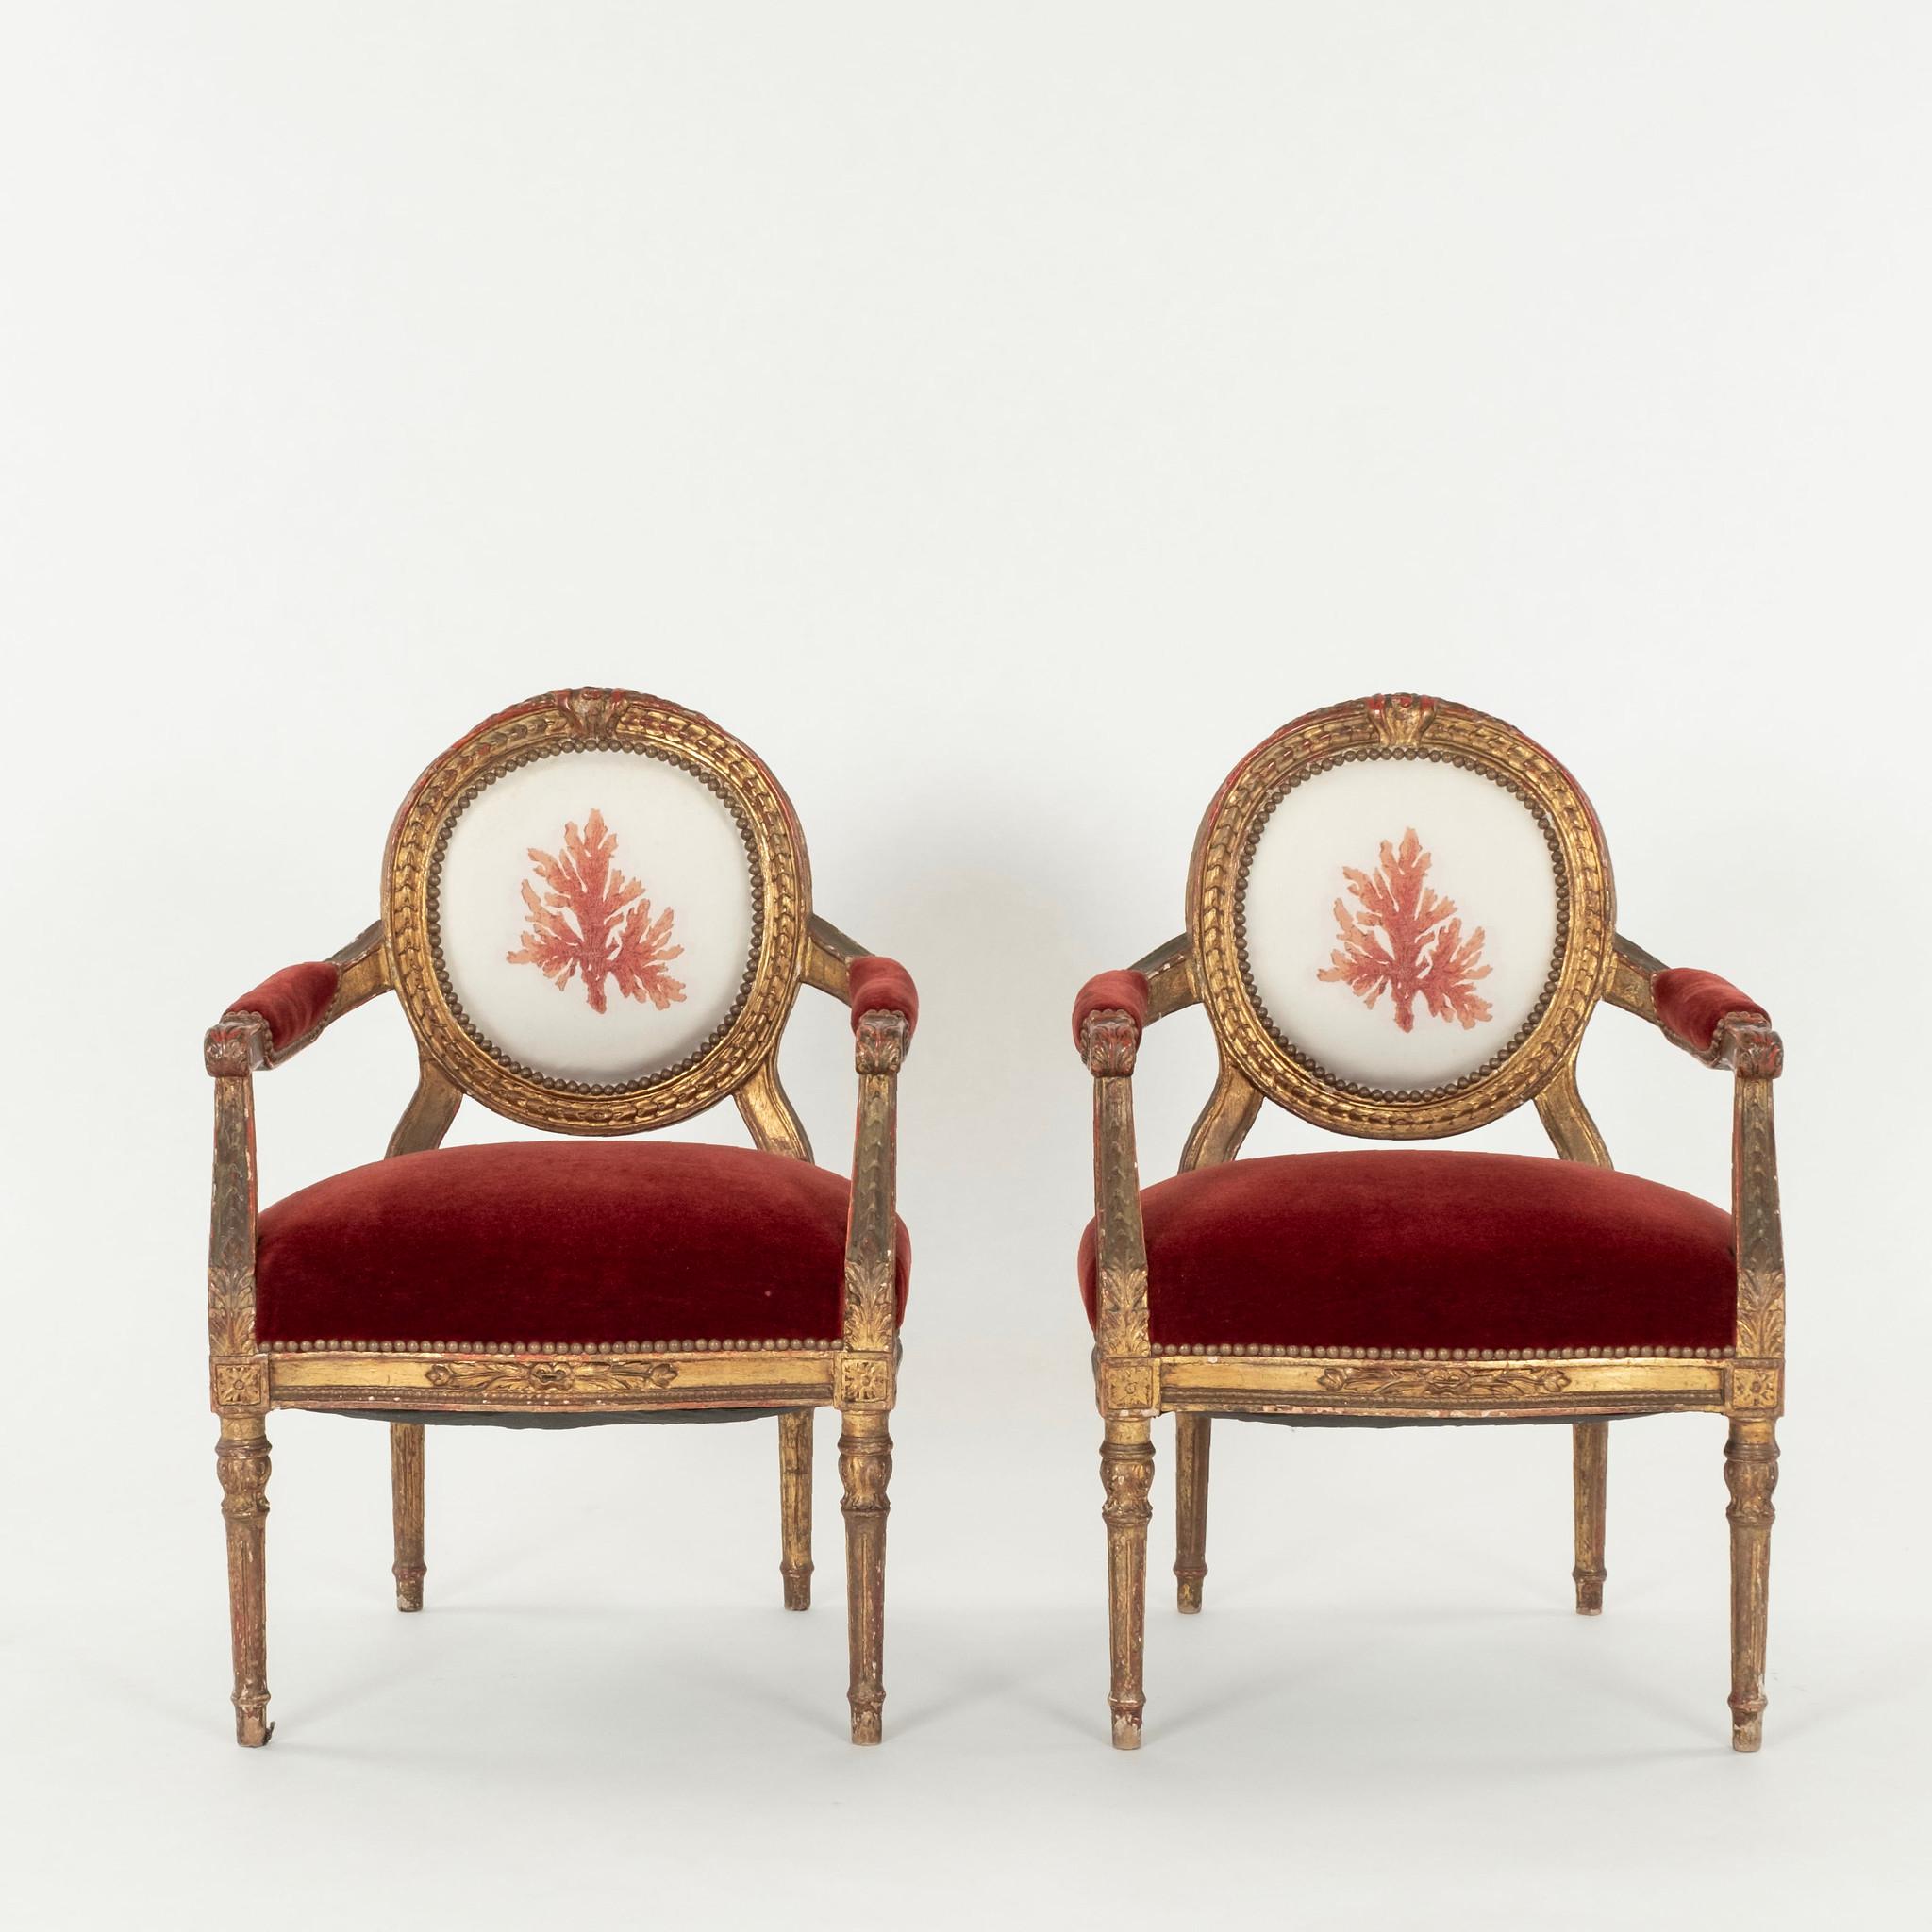 Paar Fauteuils im Louis-XVI-Stil aus dem 19. Jahrhundert oder früher, gepolstert mit Korallenmotiv auf der Innenseite der Rückenlehnen, Sitze aus rotem Mohair und auf den äußeren Rückenlehnen.